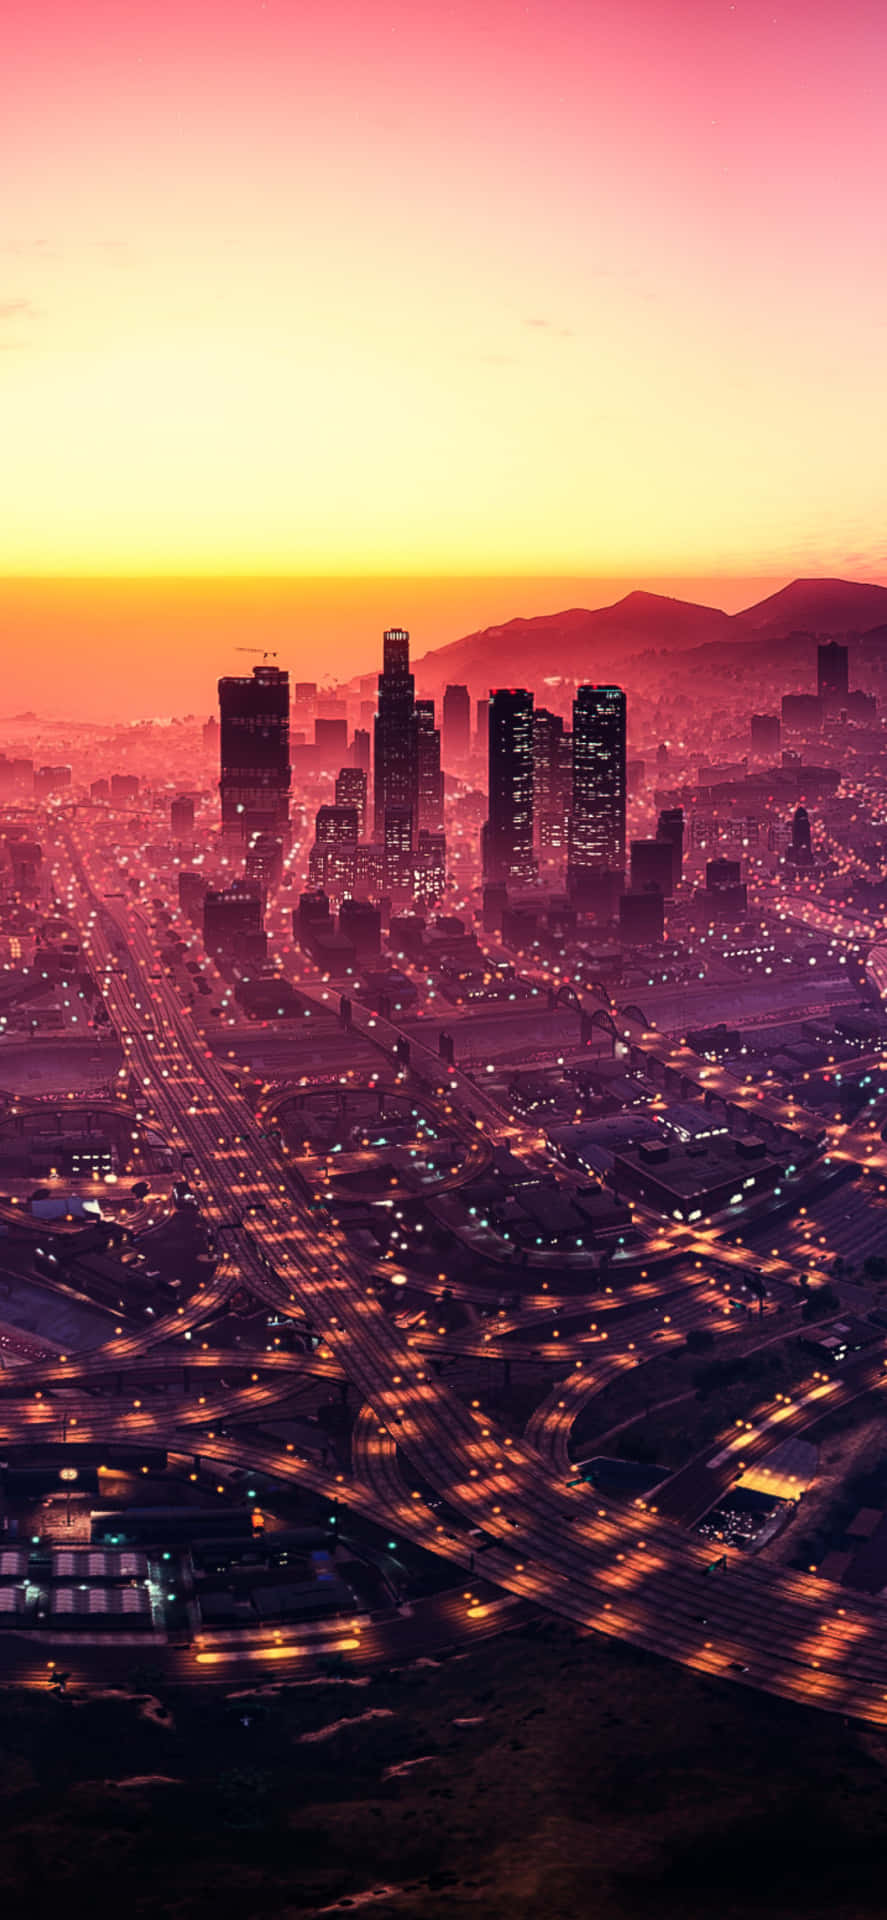 Sfondoper Iphone Xs Max Di Grand Theft Auto V, Los Santos Illuminata Di Luci.